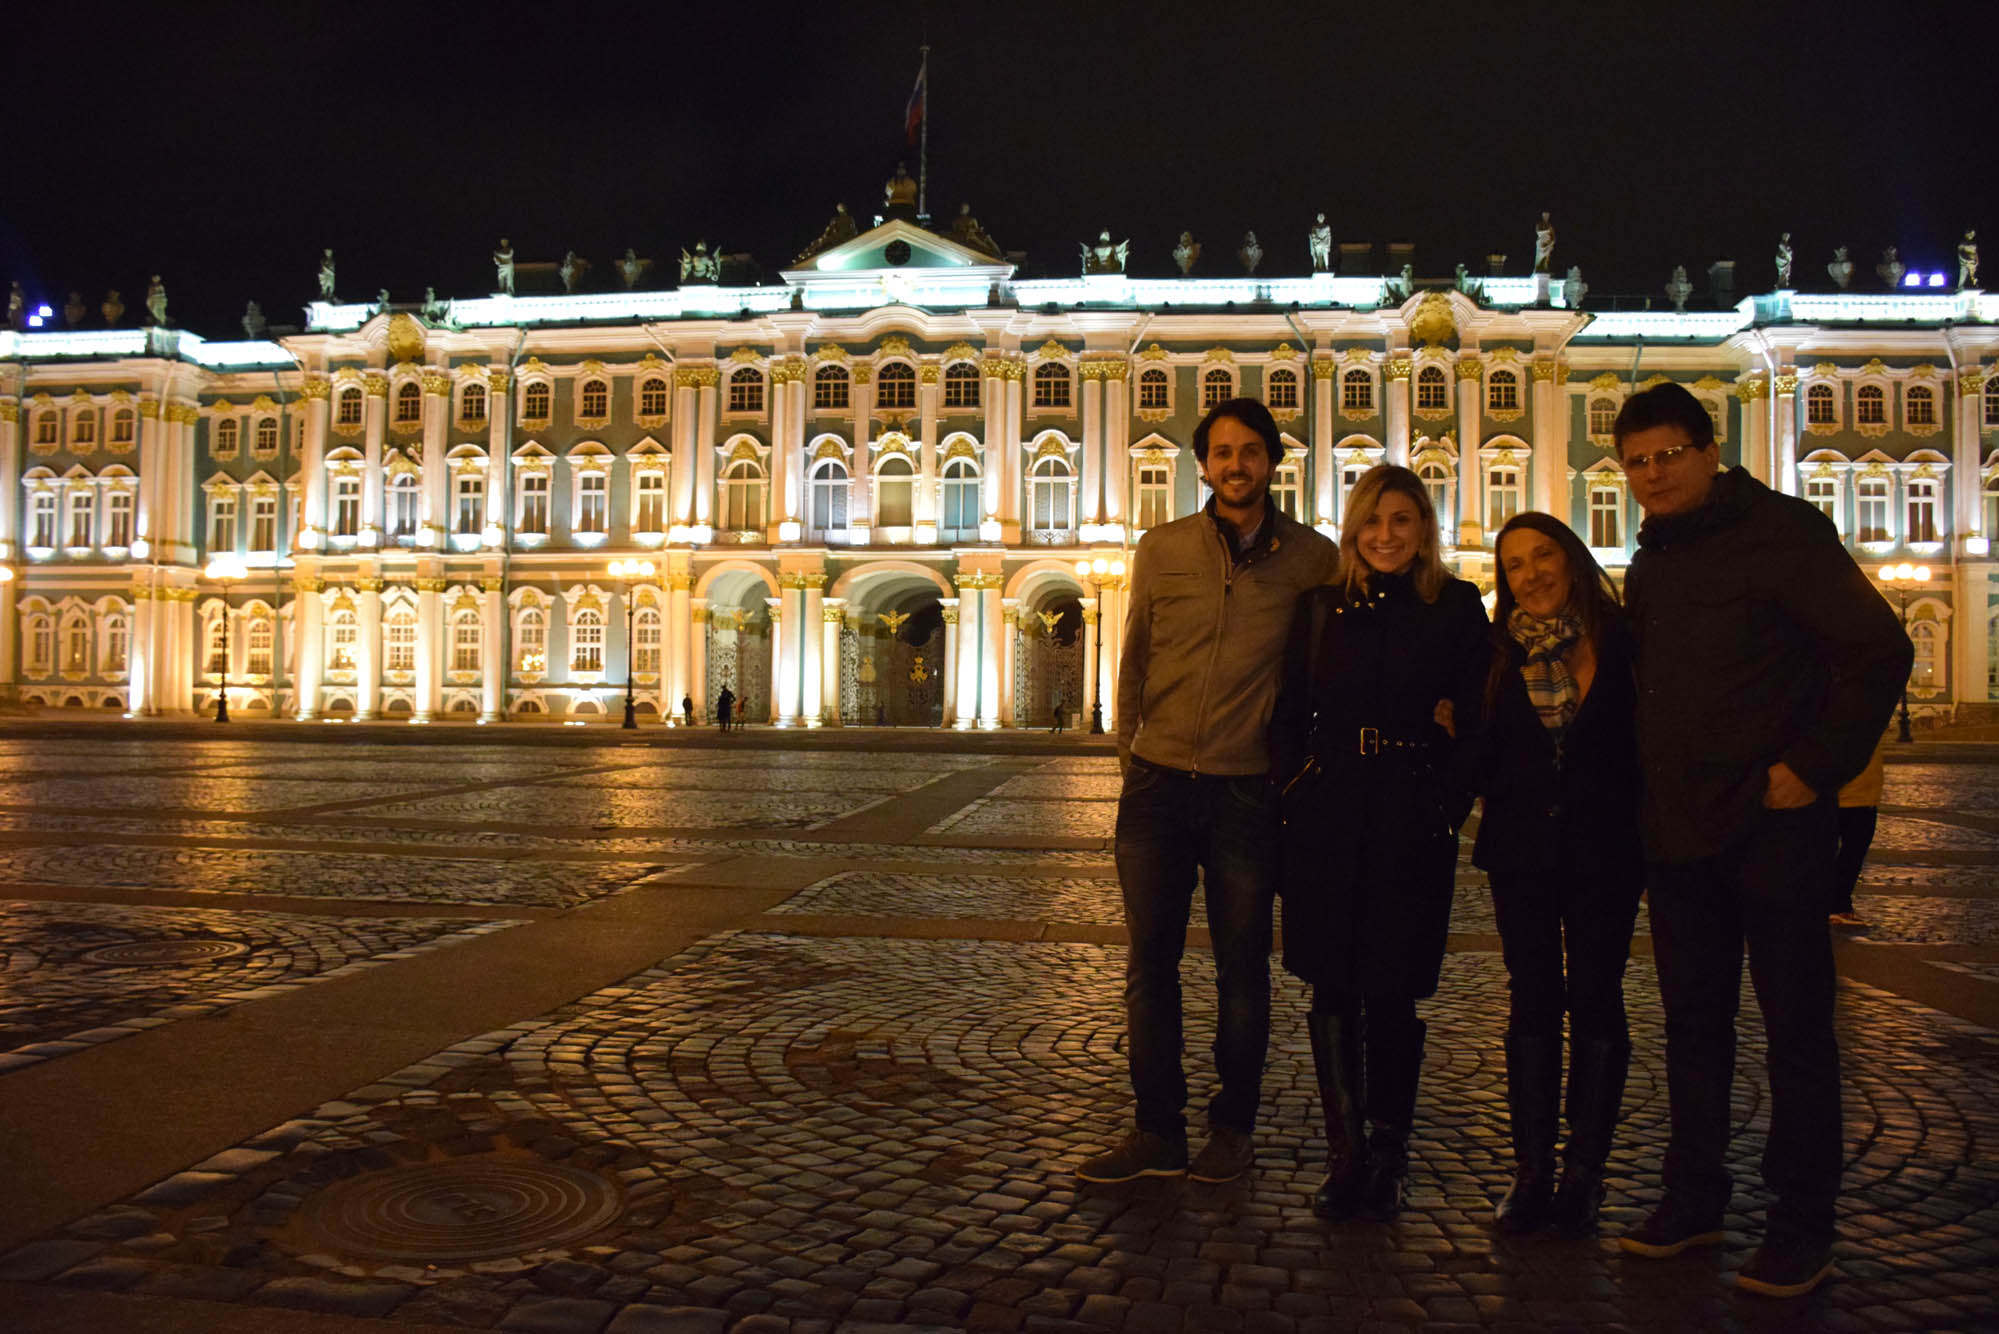 Em frente ao Palácio de Inverno - Hermitage - iluminado! Ainda mais lindo!!